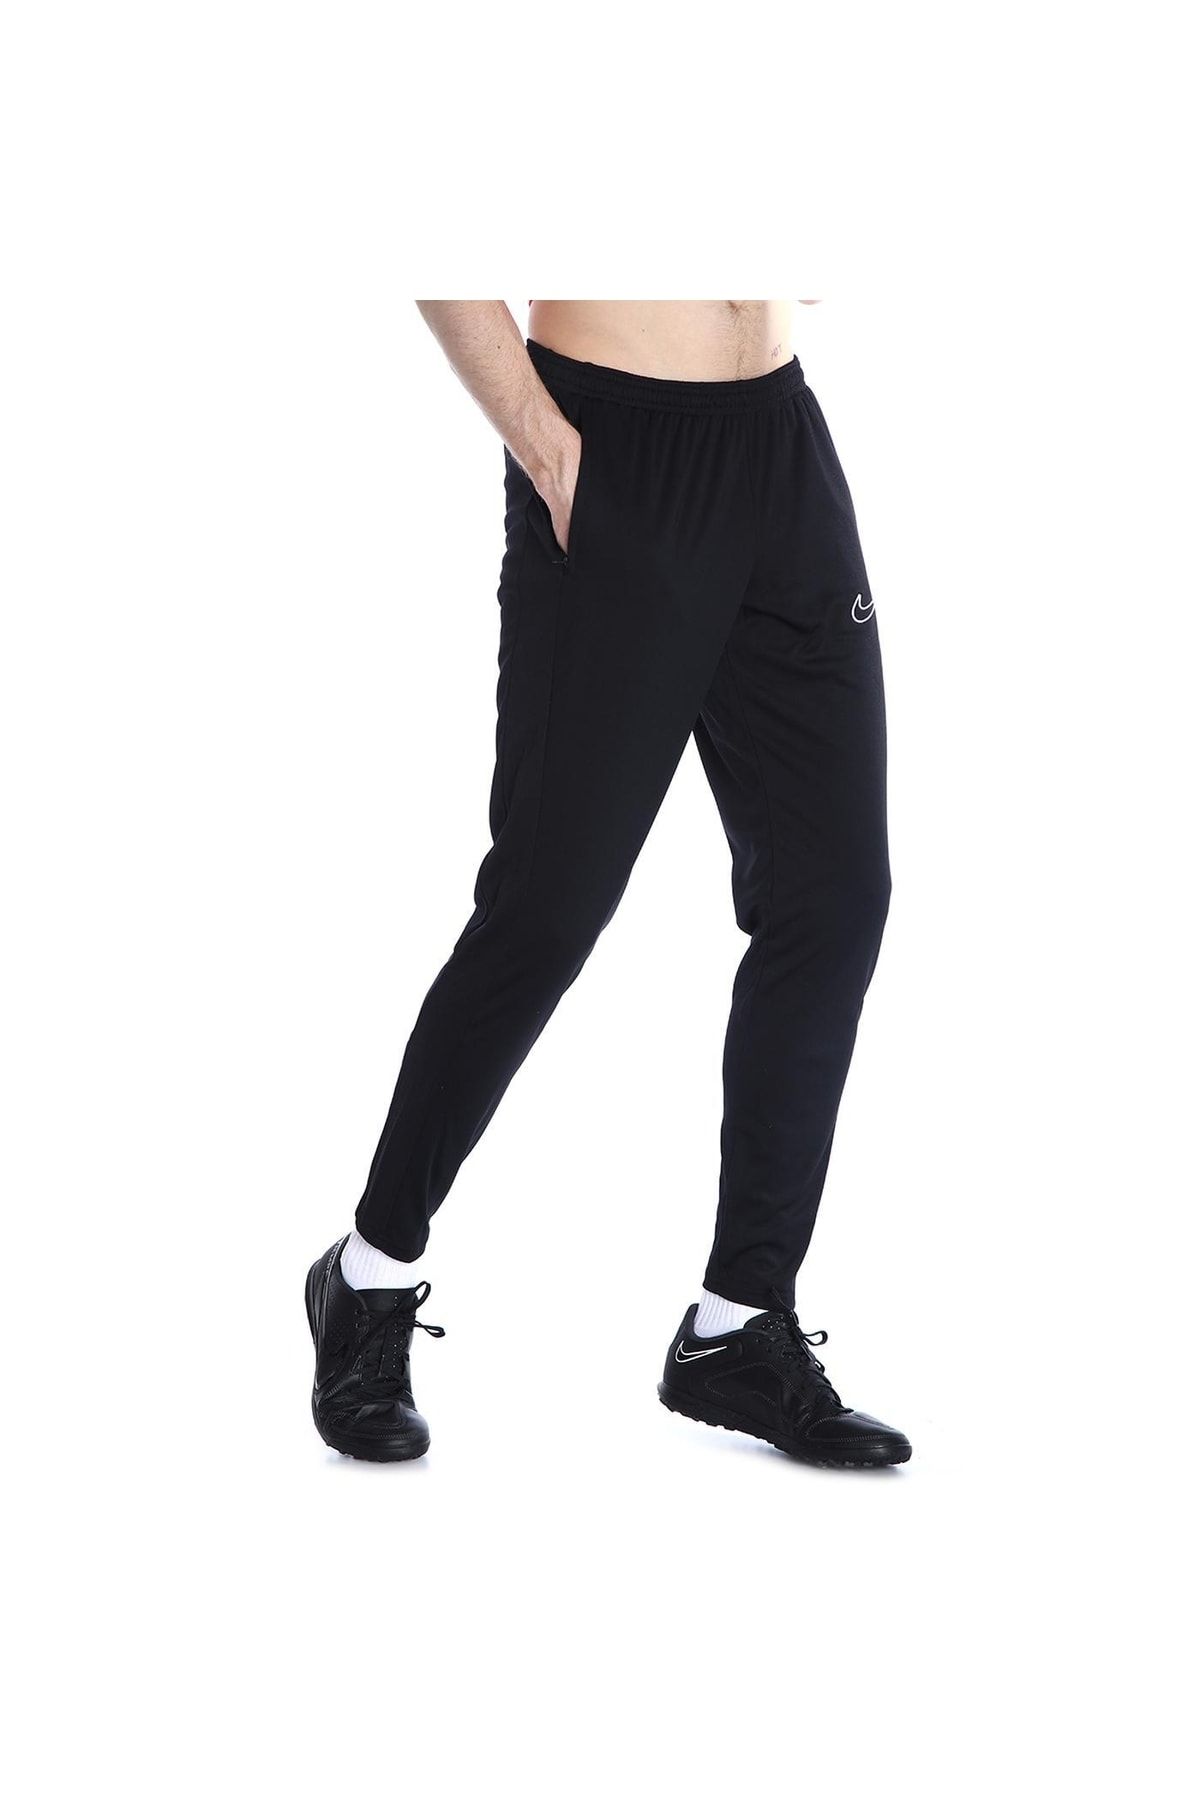 Nike Women's Black Essential Running Sweatpants 7/8 Cd8218-010 - Trendyol